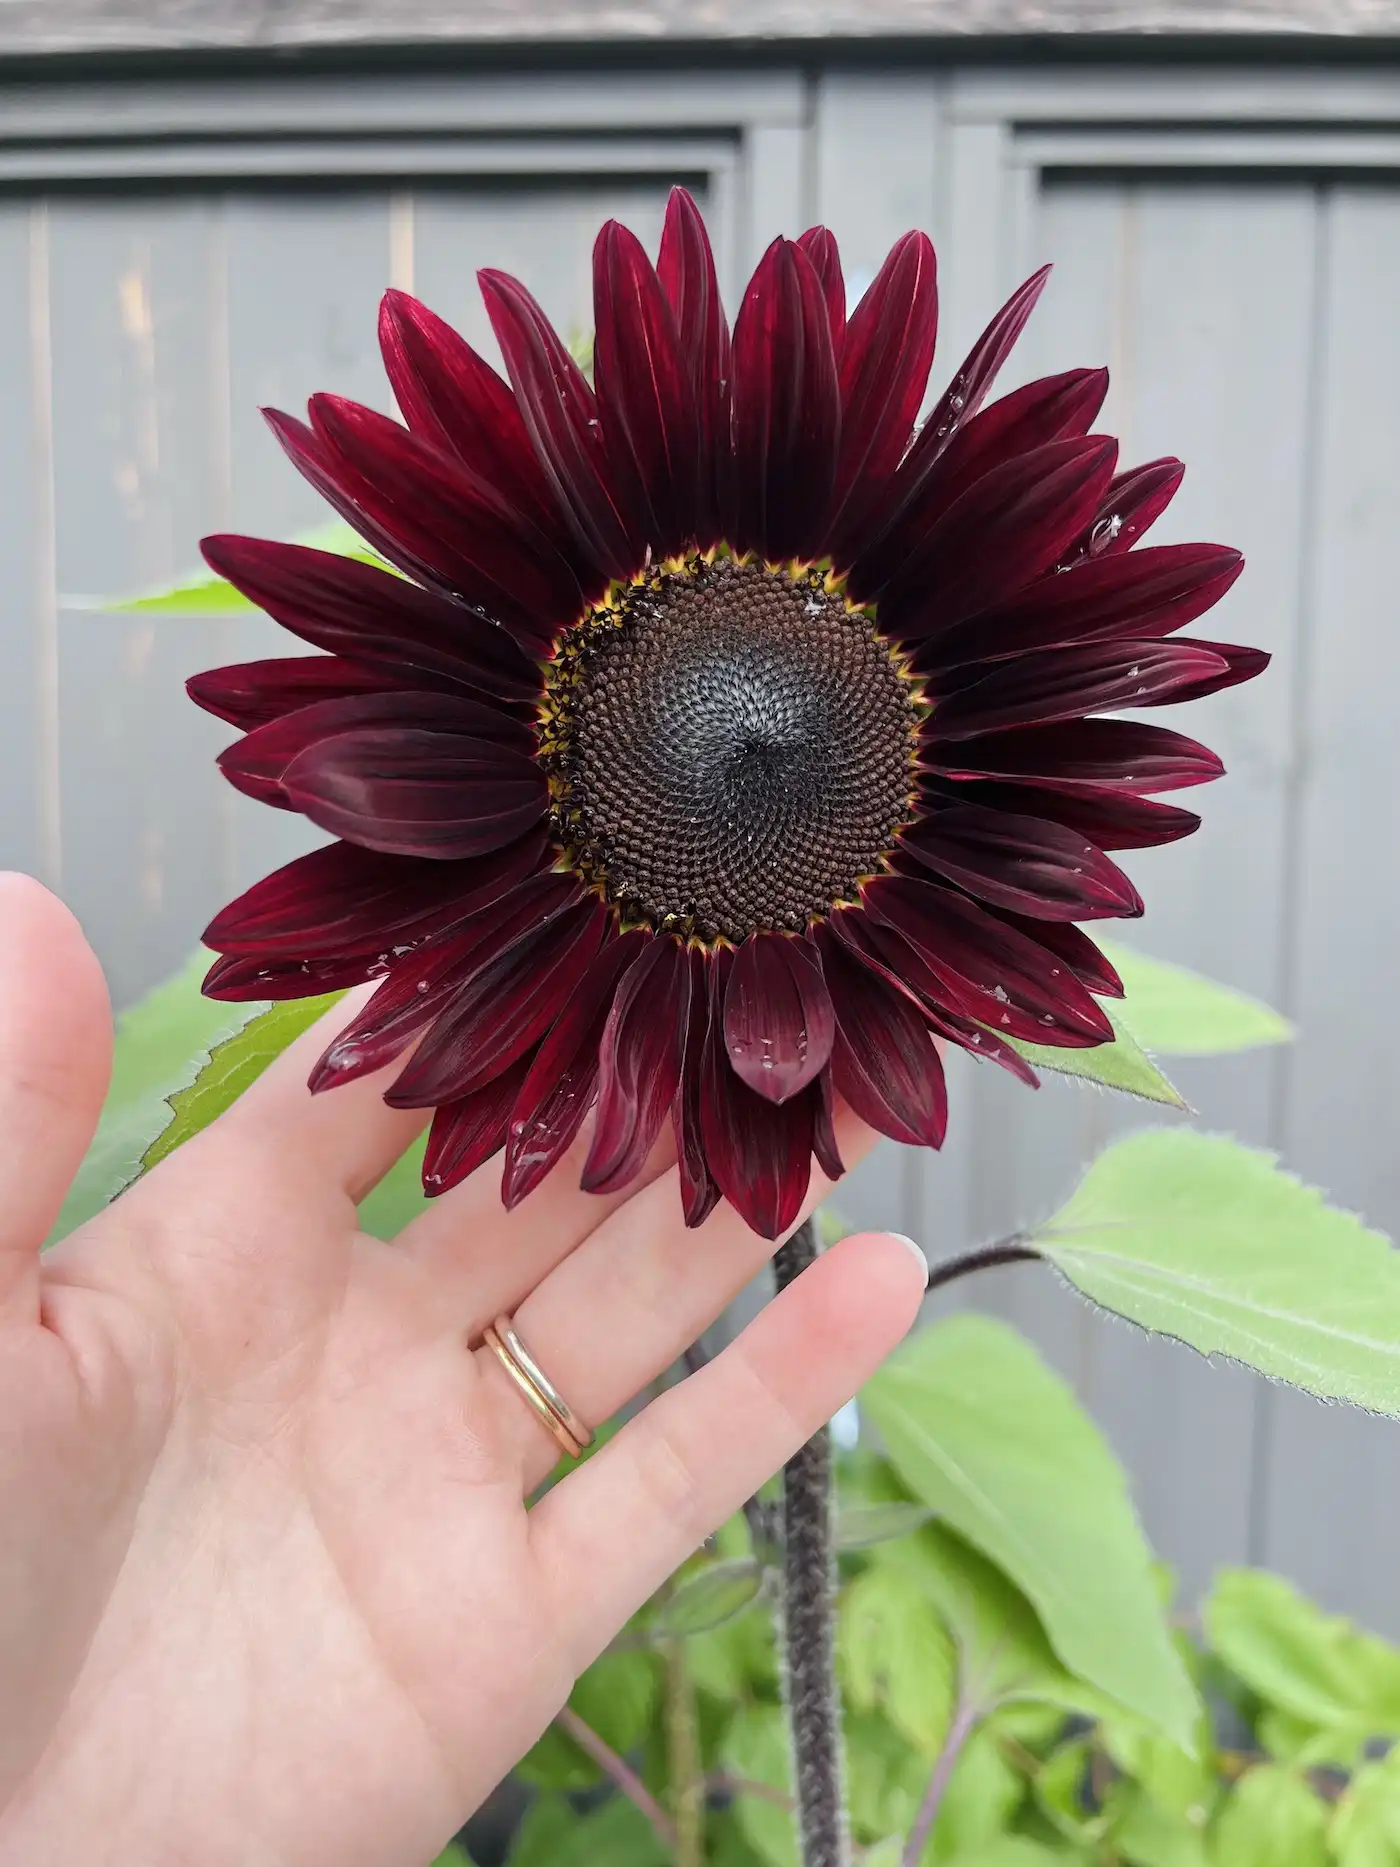 Velvet queen sunflower seeds